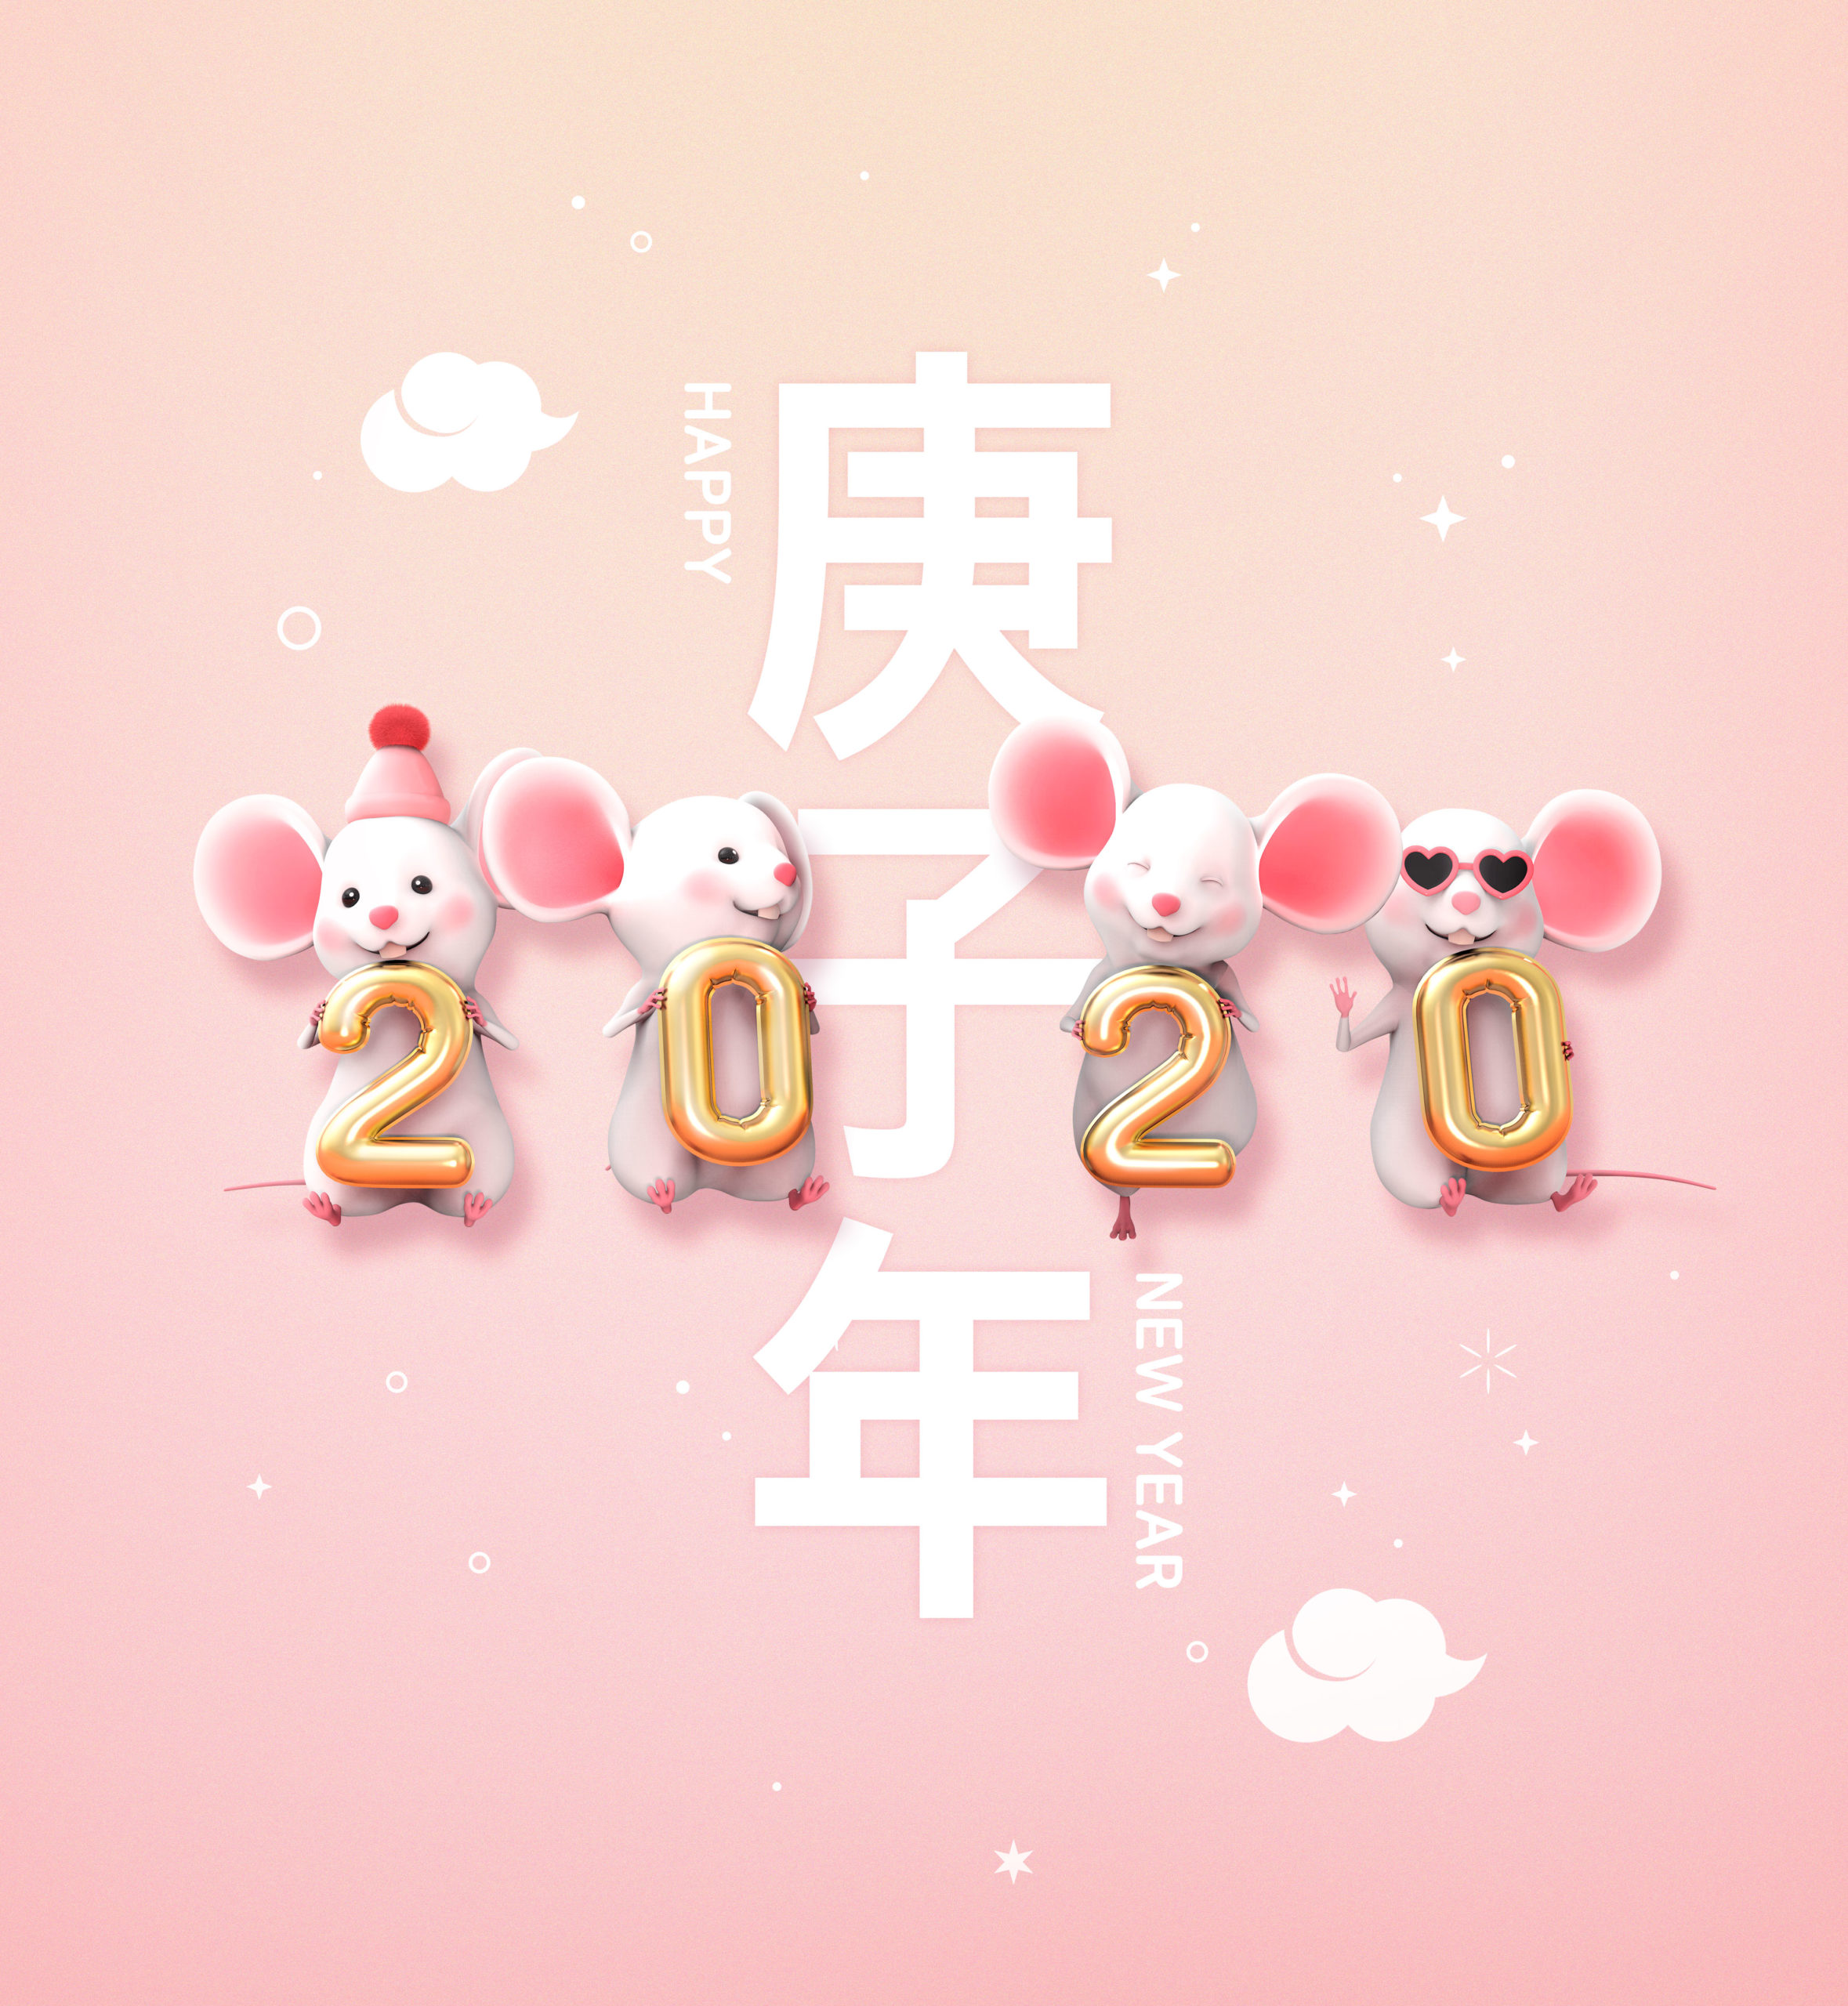 可爱小老鼠2020鼠年/庚子年/新年快乐主题海报模板[PSD]插图(6)